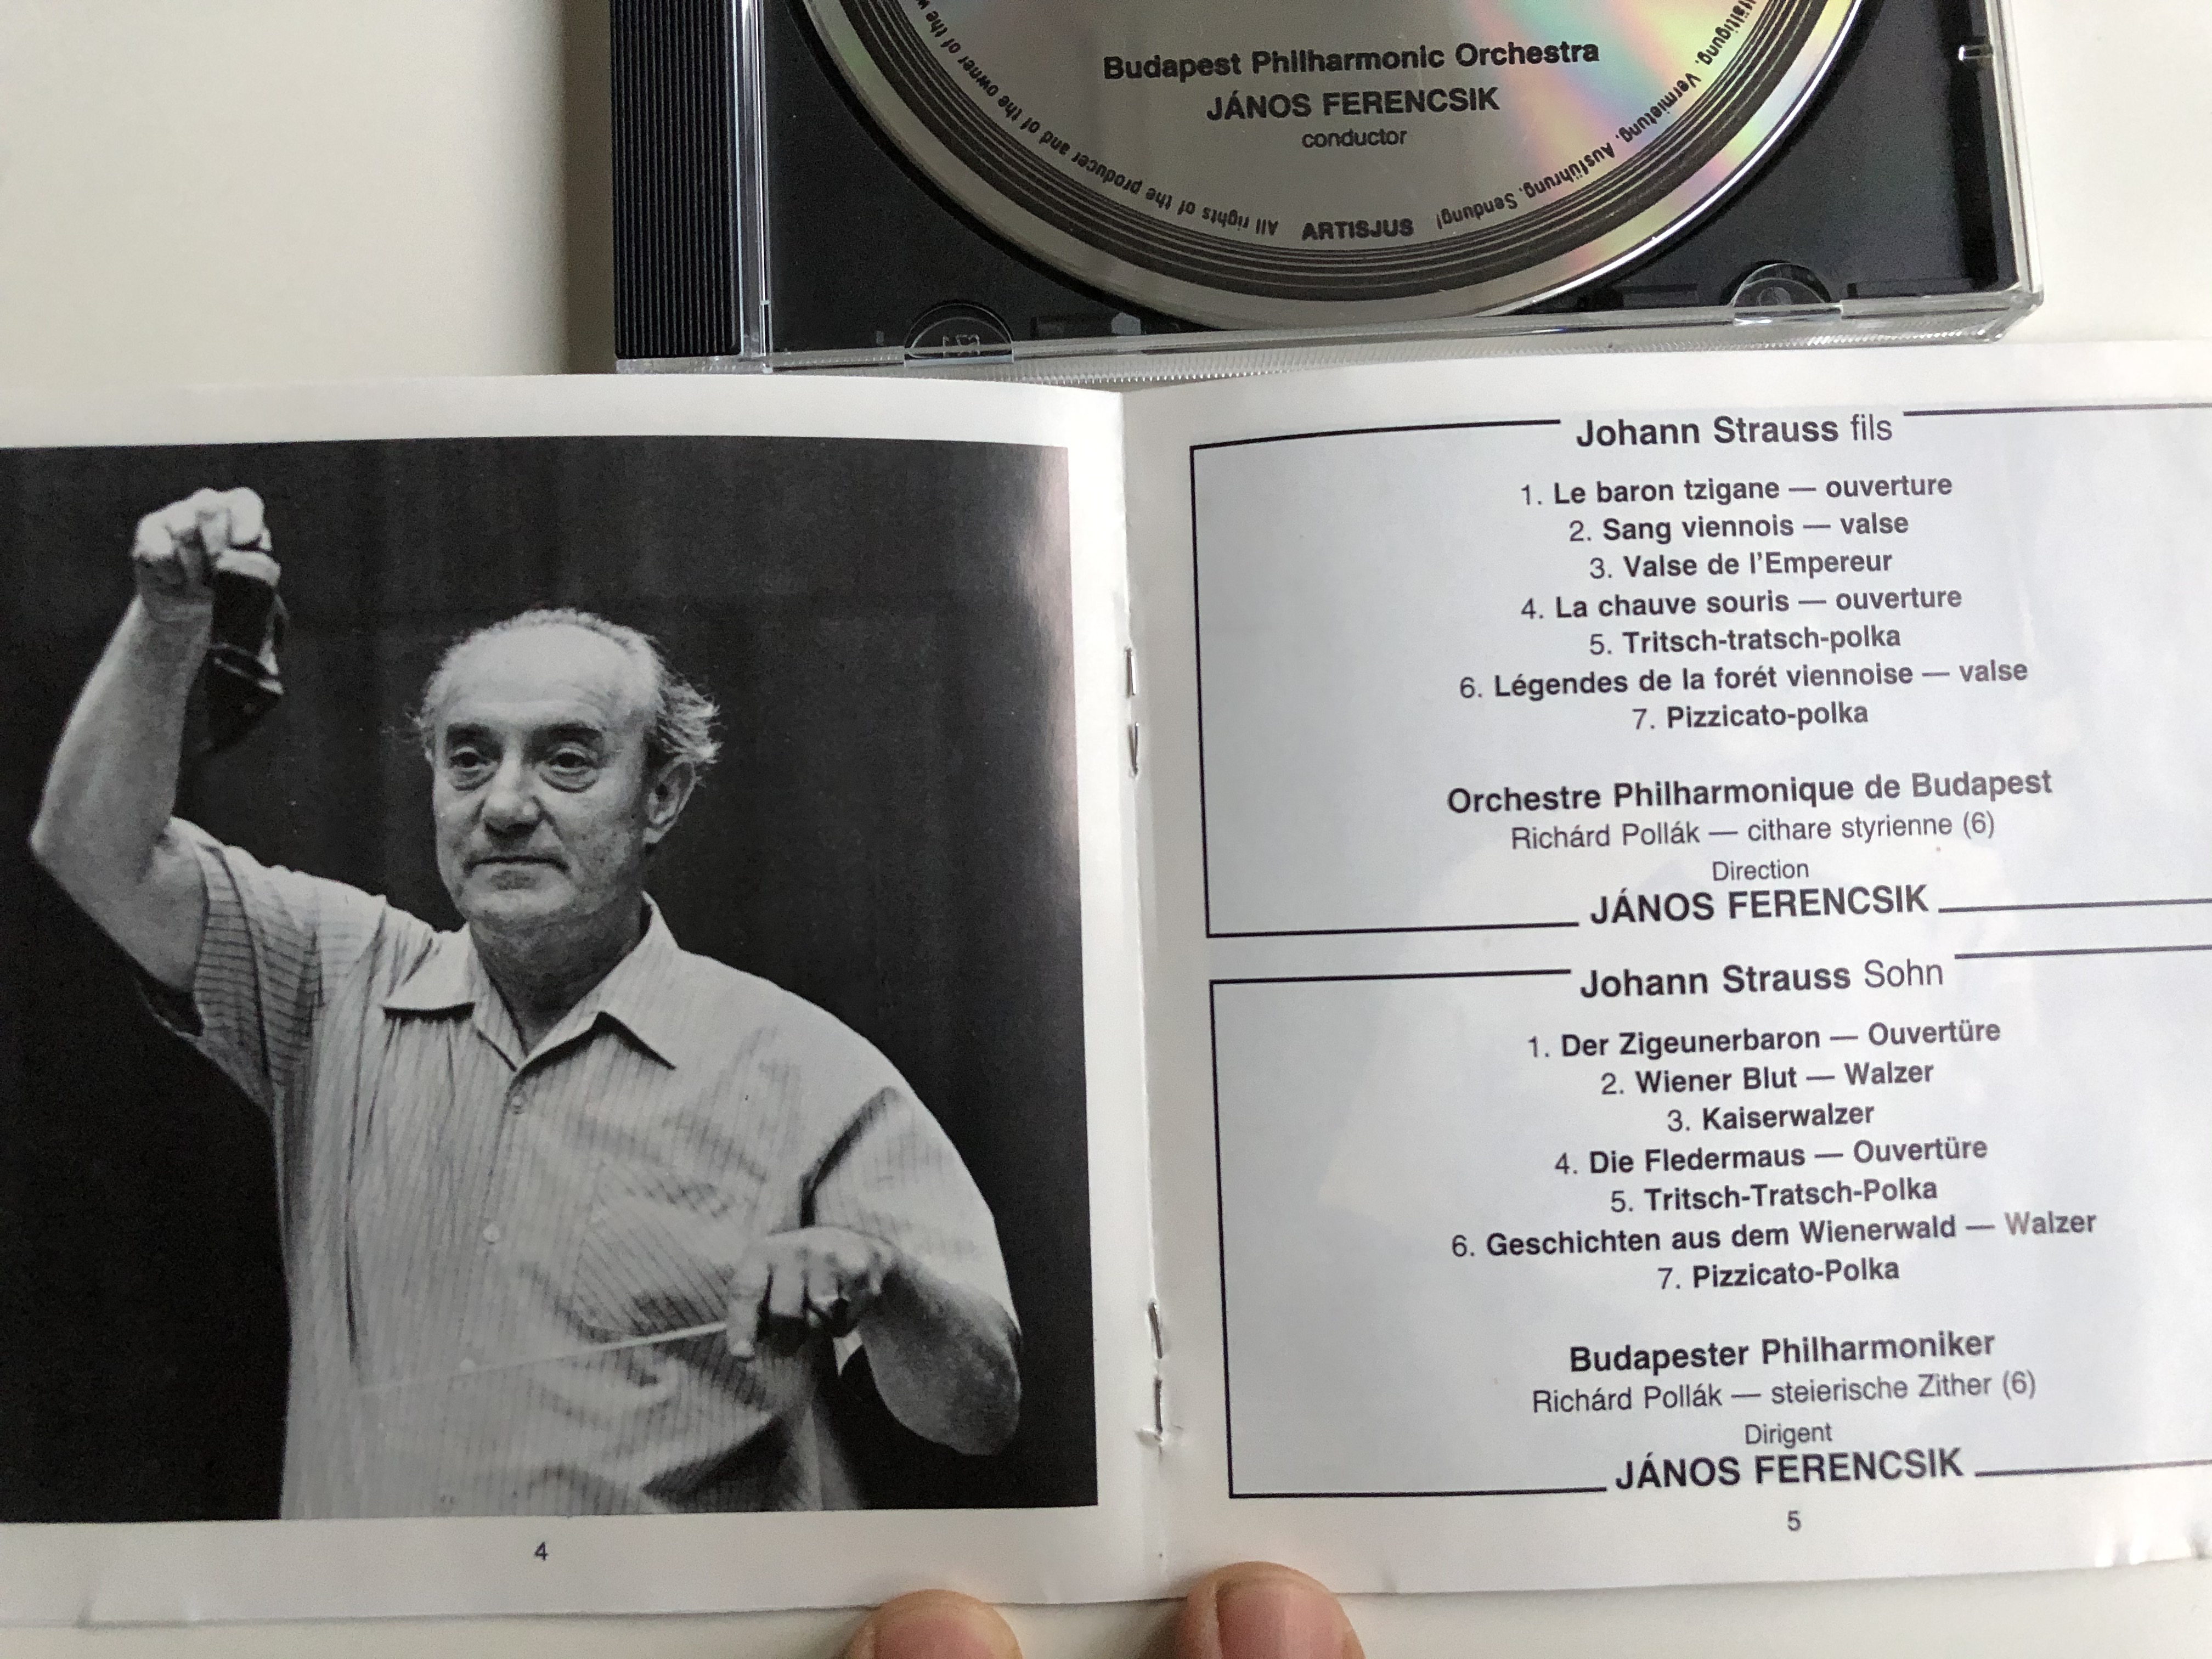 johann-strauss-overtures-waltzes-polkas-j-nos-ferencsik-budapest-philharmonic-orchestra-hungaroton-audio-cd-1981-stereo-hcd-12353-2-4-.jpg